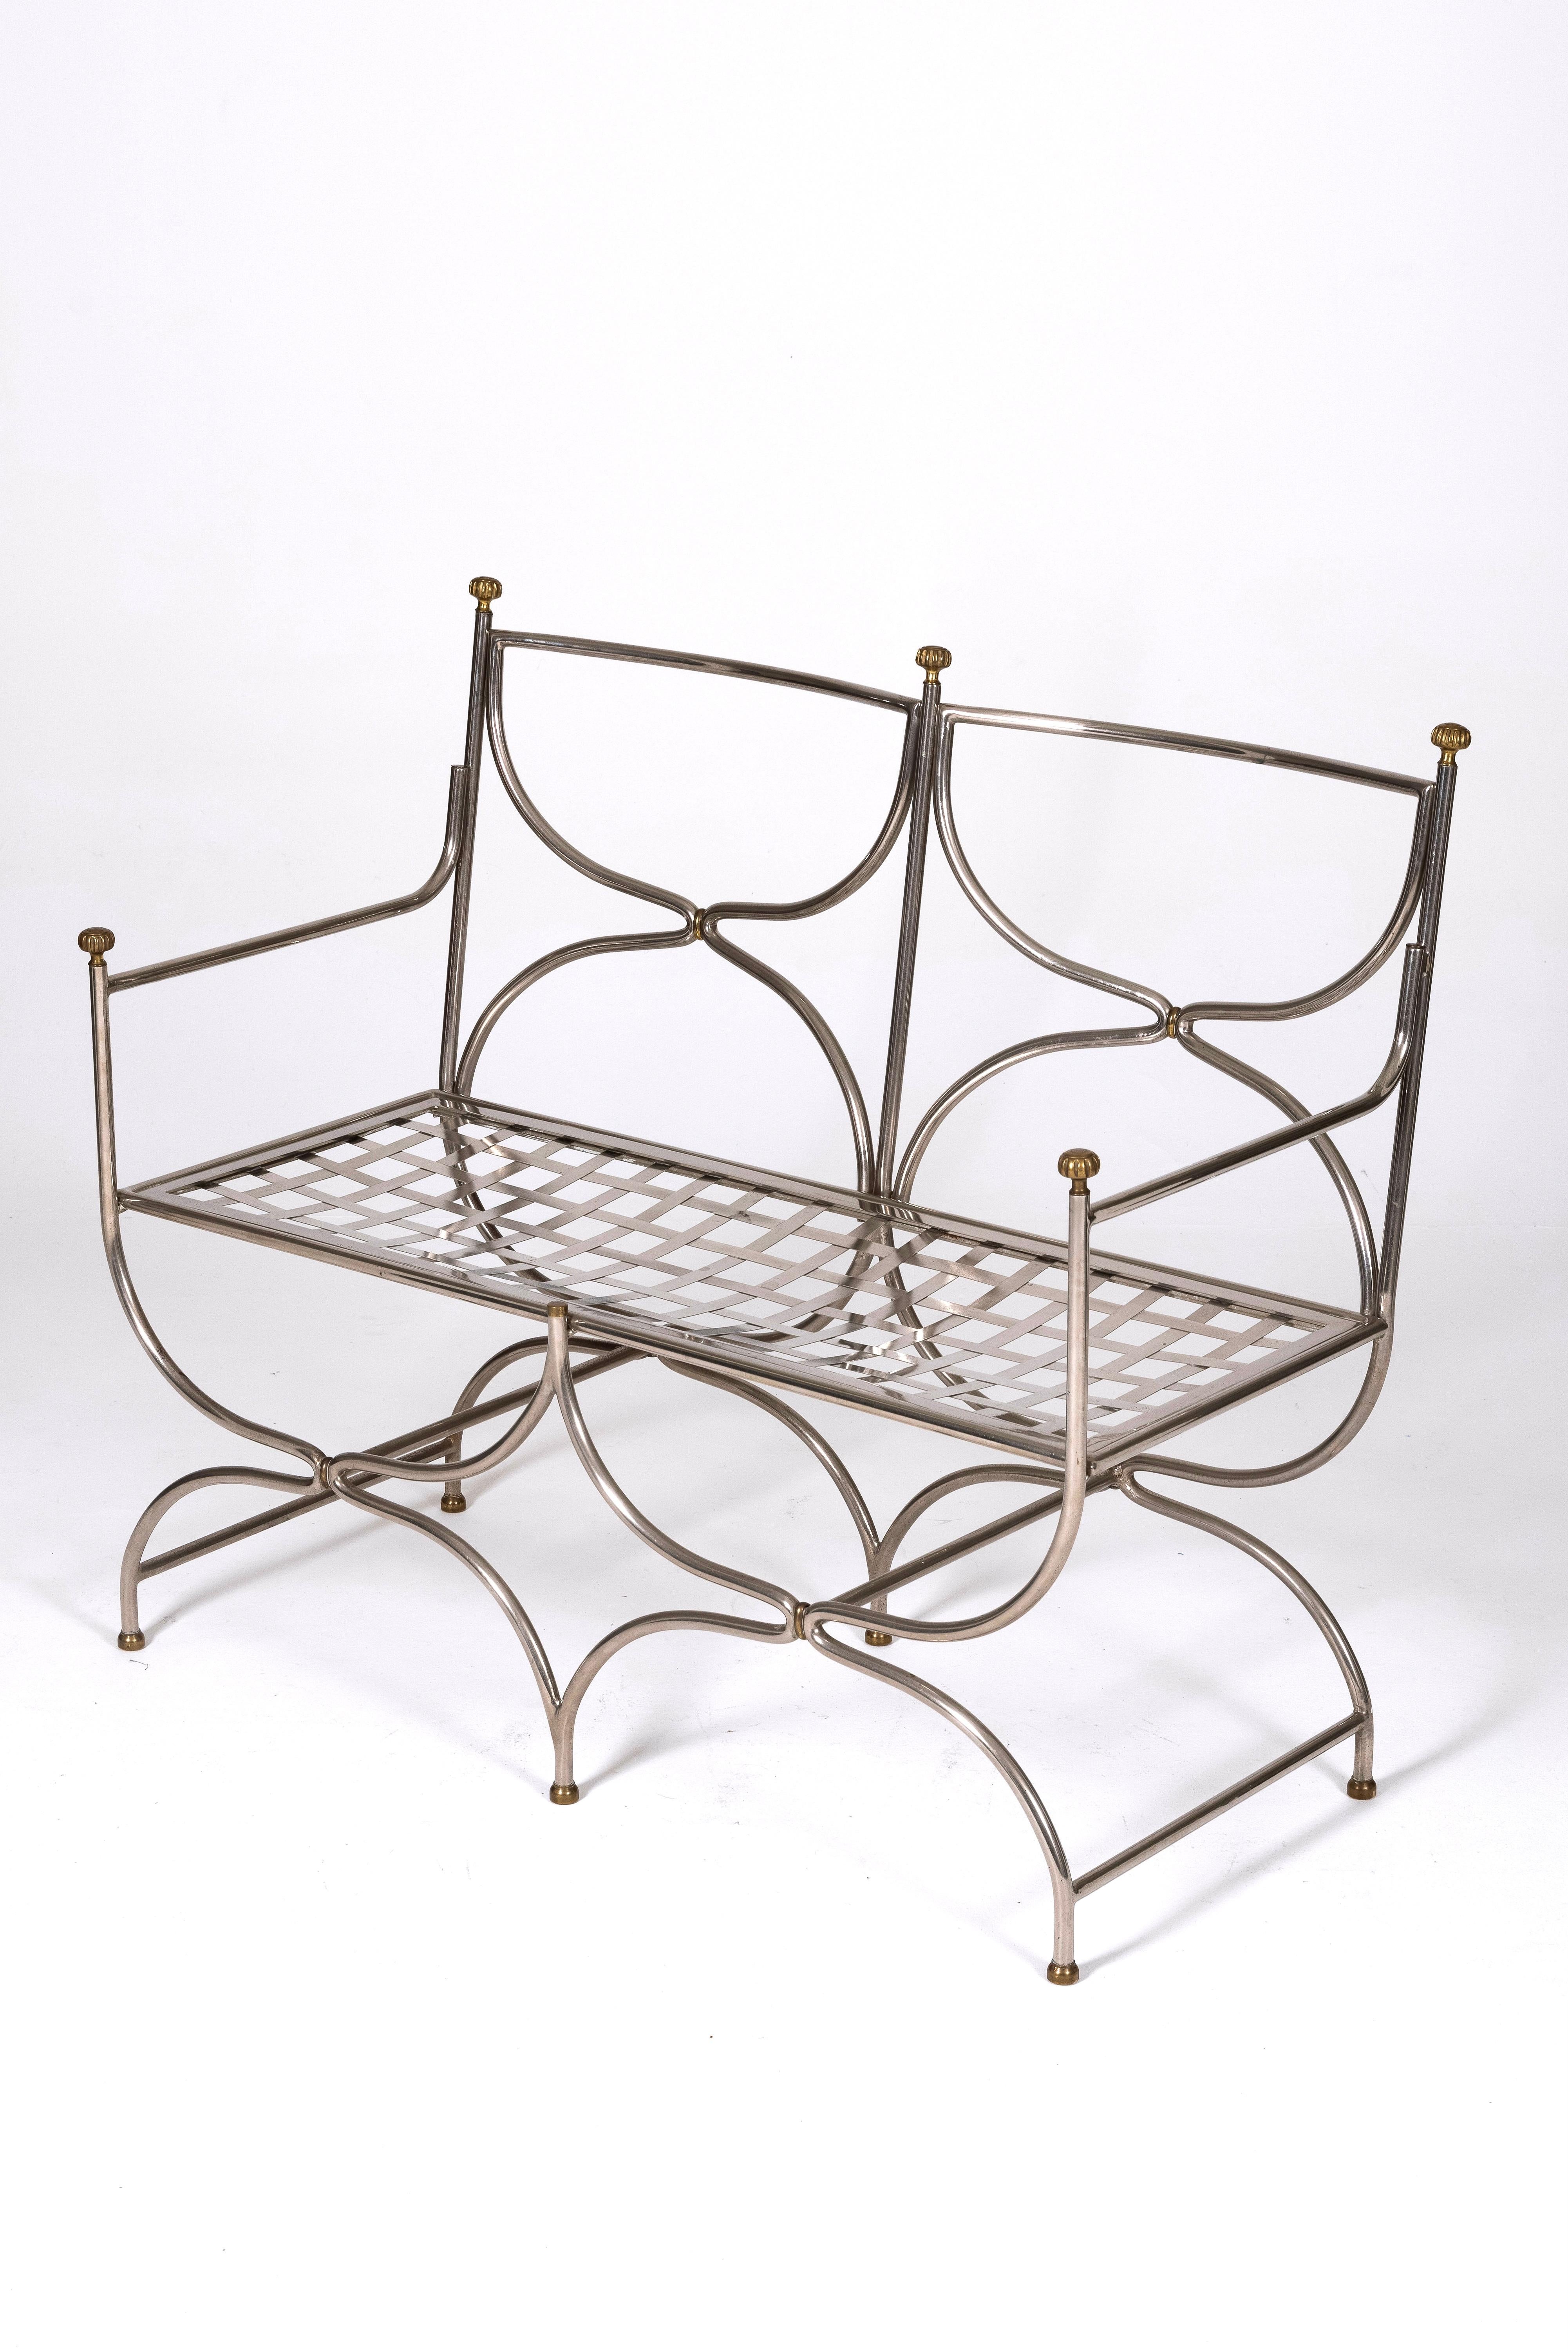 Modèle de banc Curule Savonarola en acier et laiton du designer et éditeur Maison Jansen, des années 1960. Banc deux places avec une assise en grille d'acier et des éléments décoratifs en laiton. En parfait état.
Lp1460.